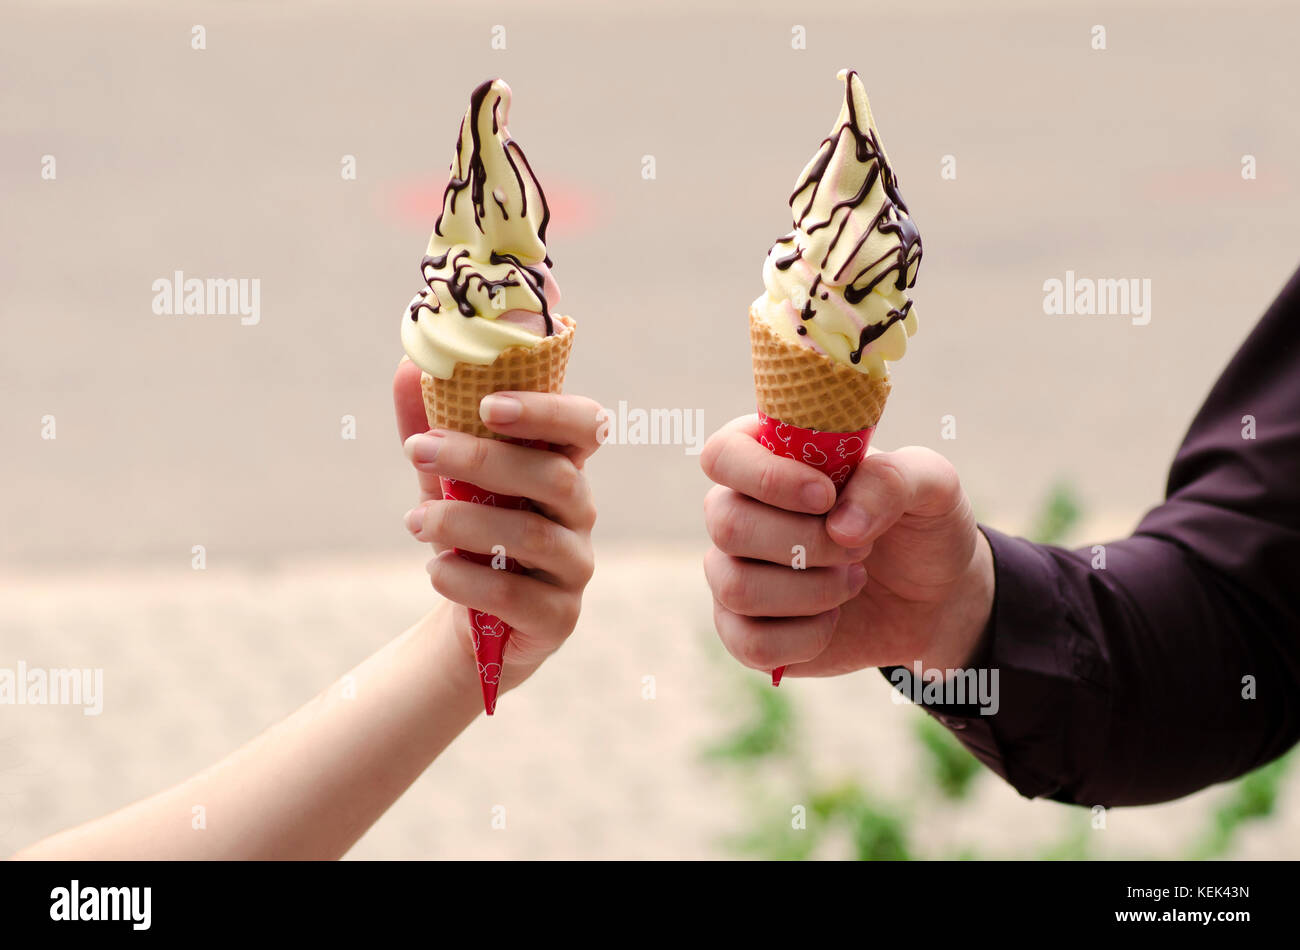 Nahaufnahme der Hände von einem Jungen und einem Mädchen, dass zwei Eis mit Schokolade toping in einem Wafer mit einem unscharfen Hintergrund Stockfoto